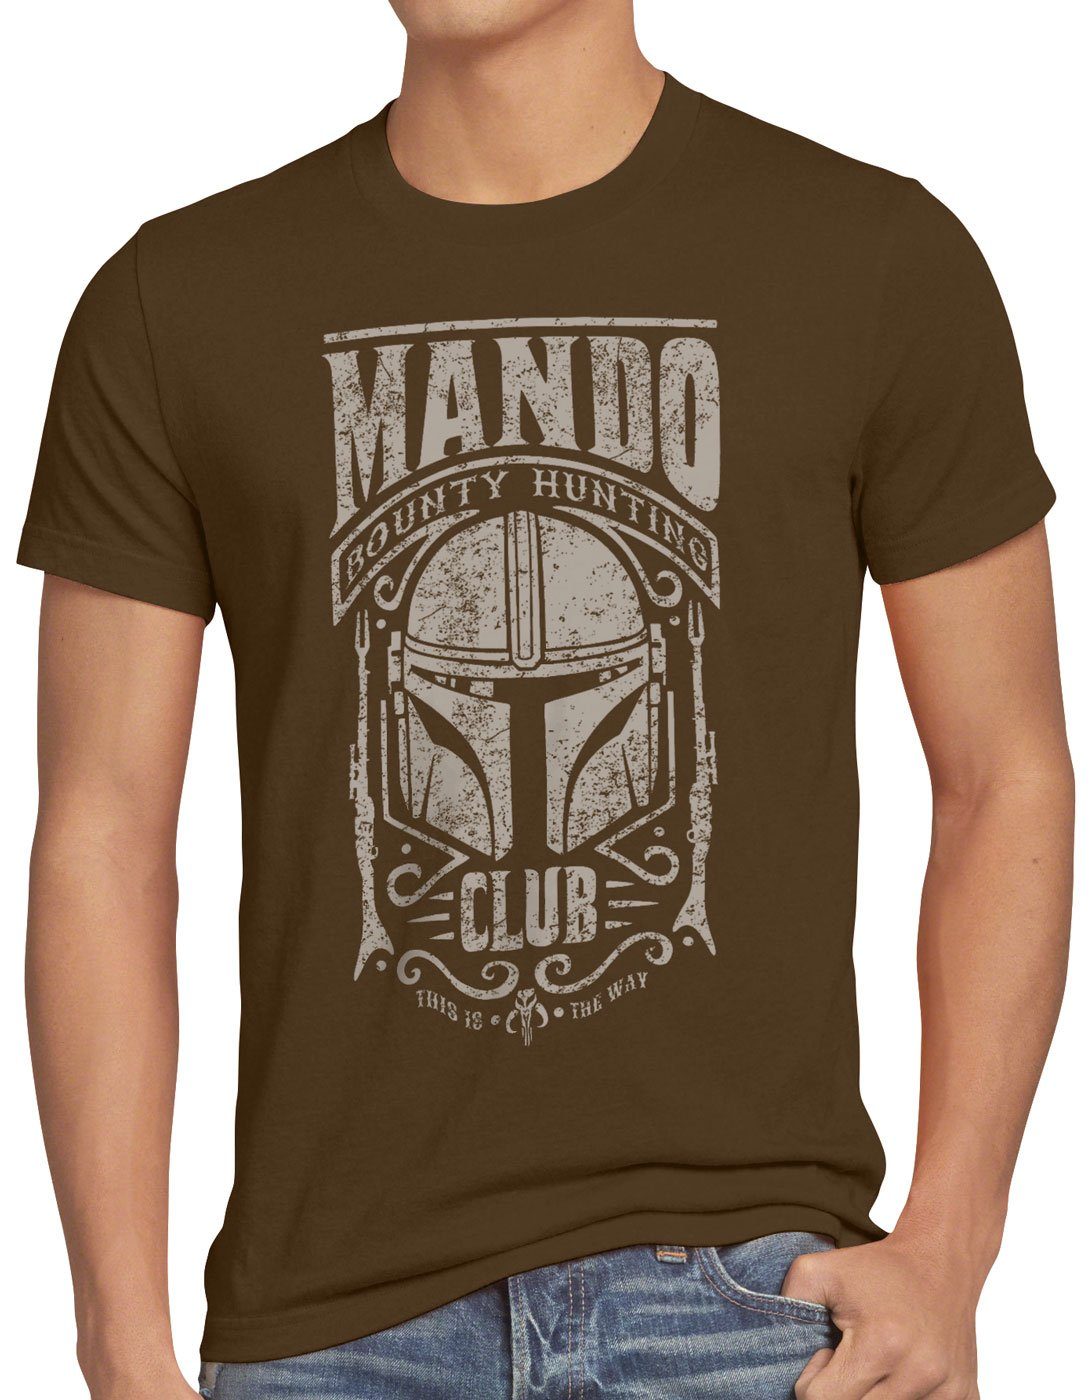 bounty Print-Shirt hunter Mando T-Shirt style3 yoda baby Herren braun